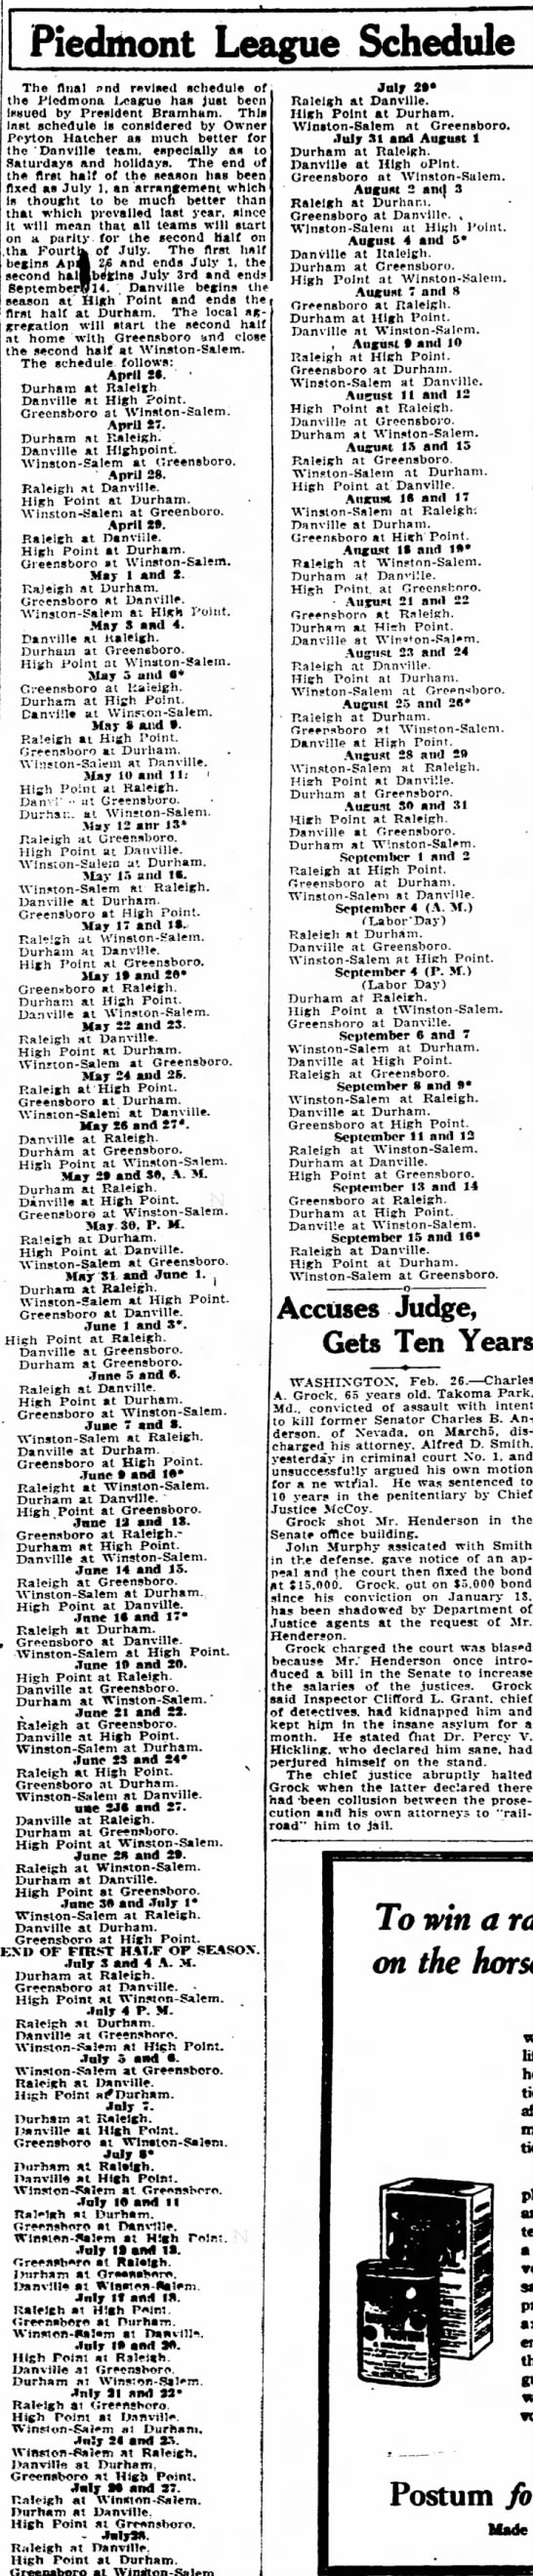 1922 Piedmont League schedule - 